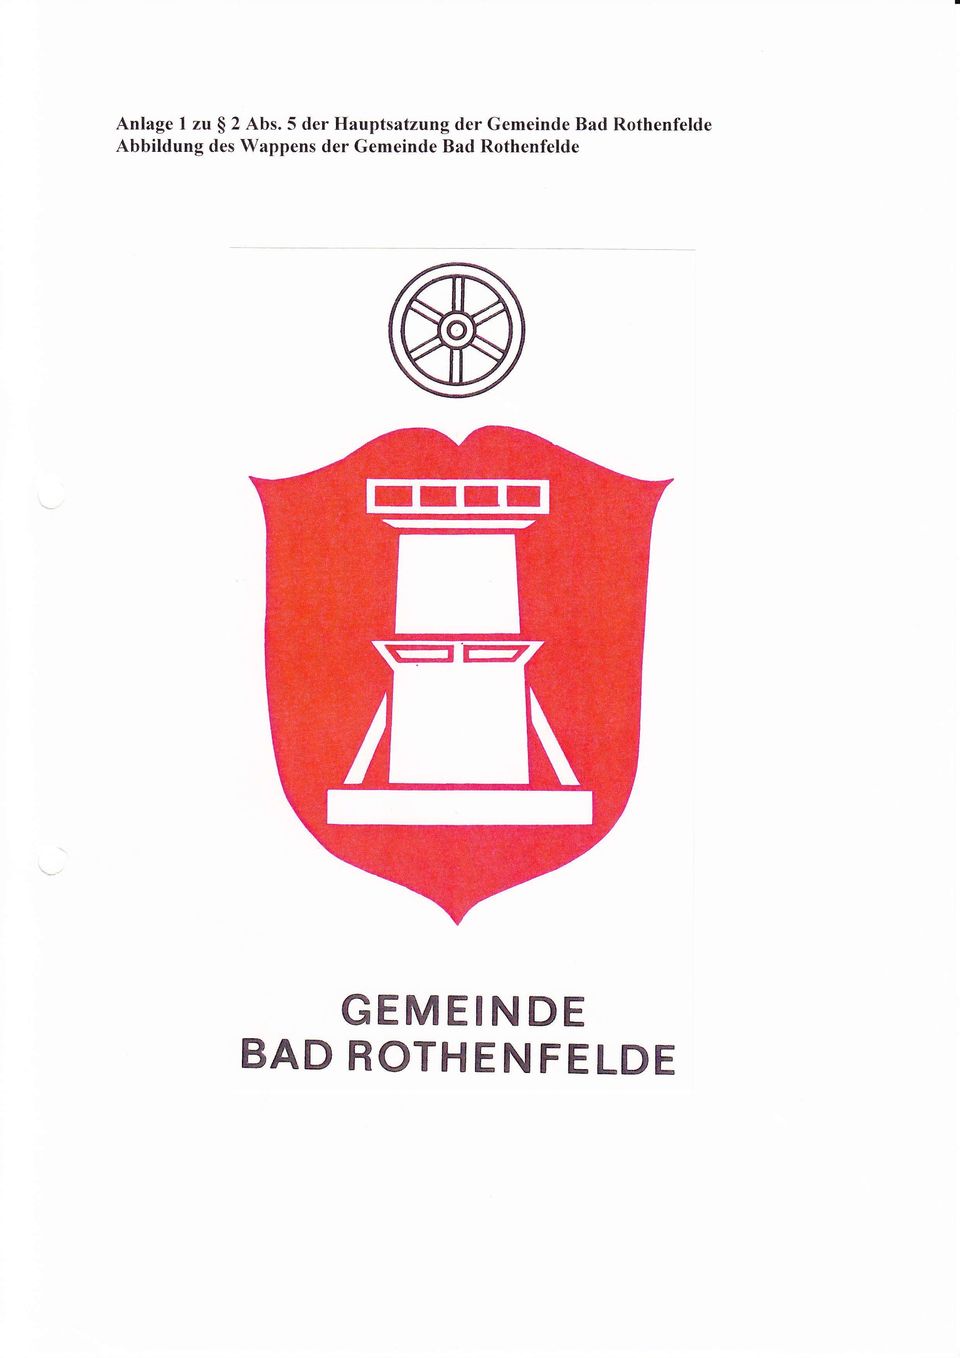 Rothenfelde Abbildung des Wappens der